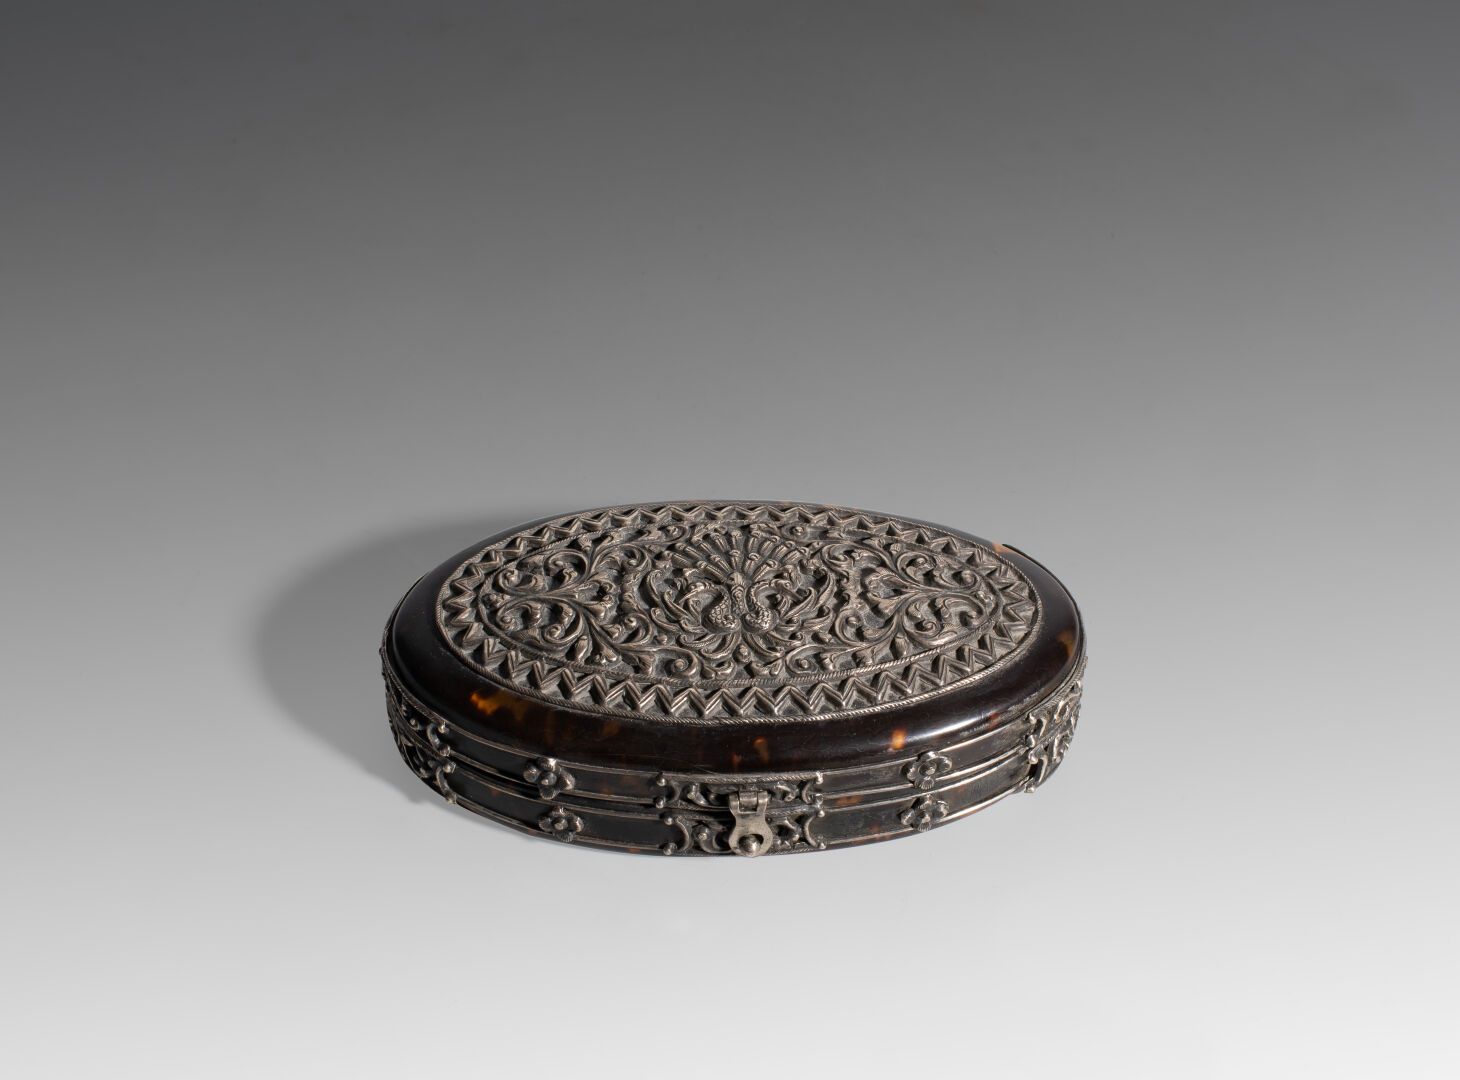 Null Boîte ovale en argent et en écaille

XIXème siècle 

L : 12 cm

(2530)